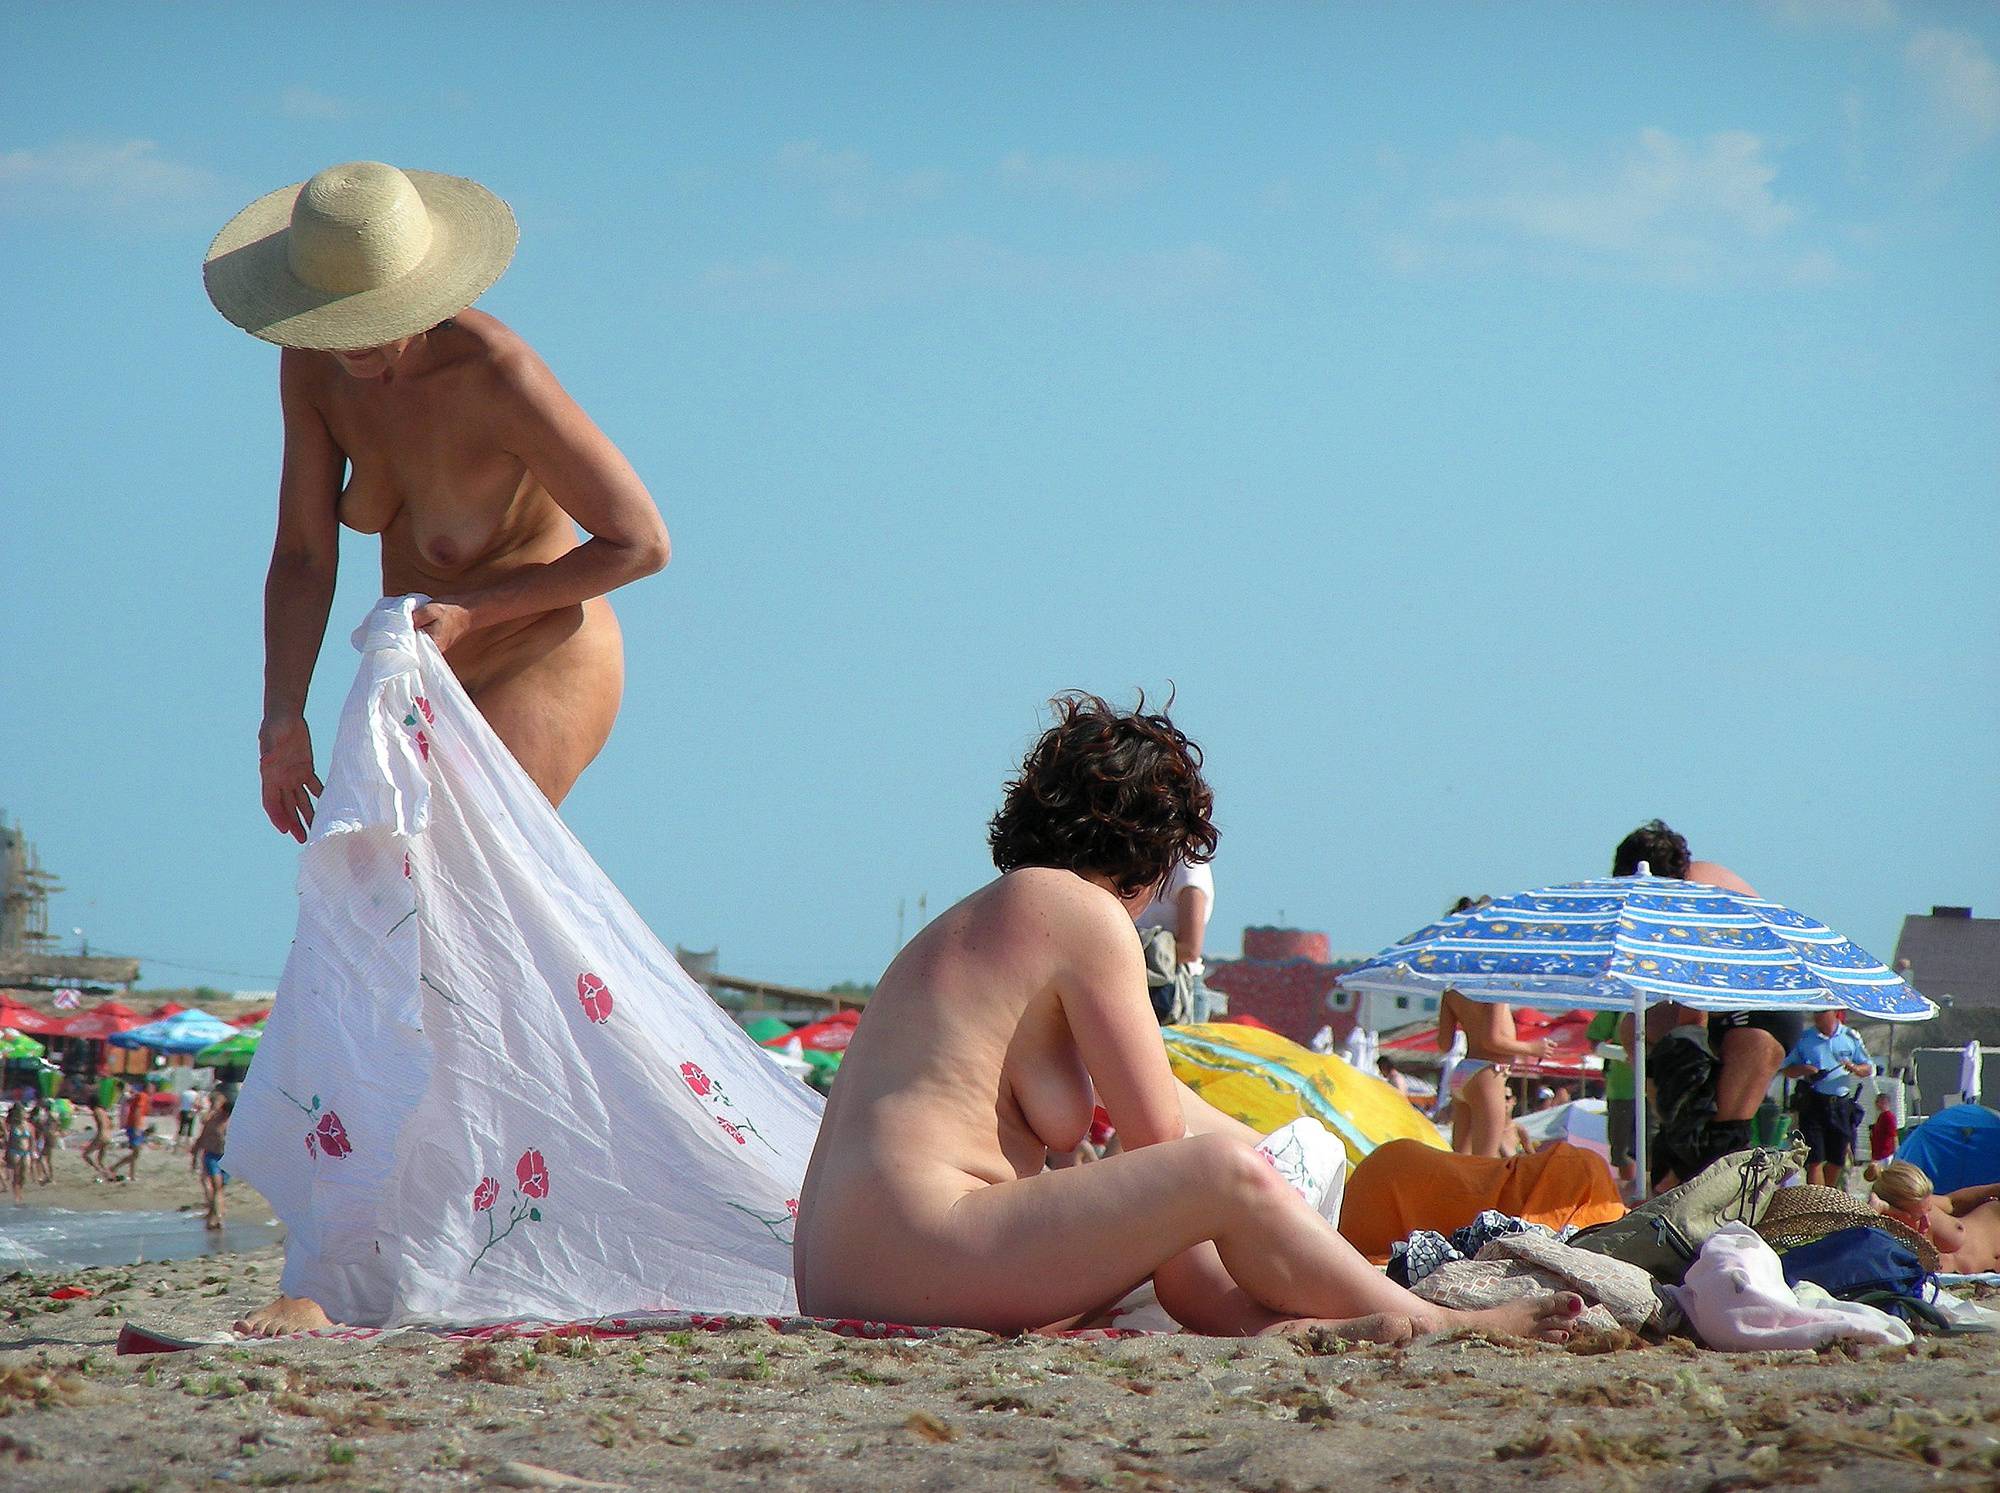 Pure Nudism-Romanian Shoreline Sands - 2